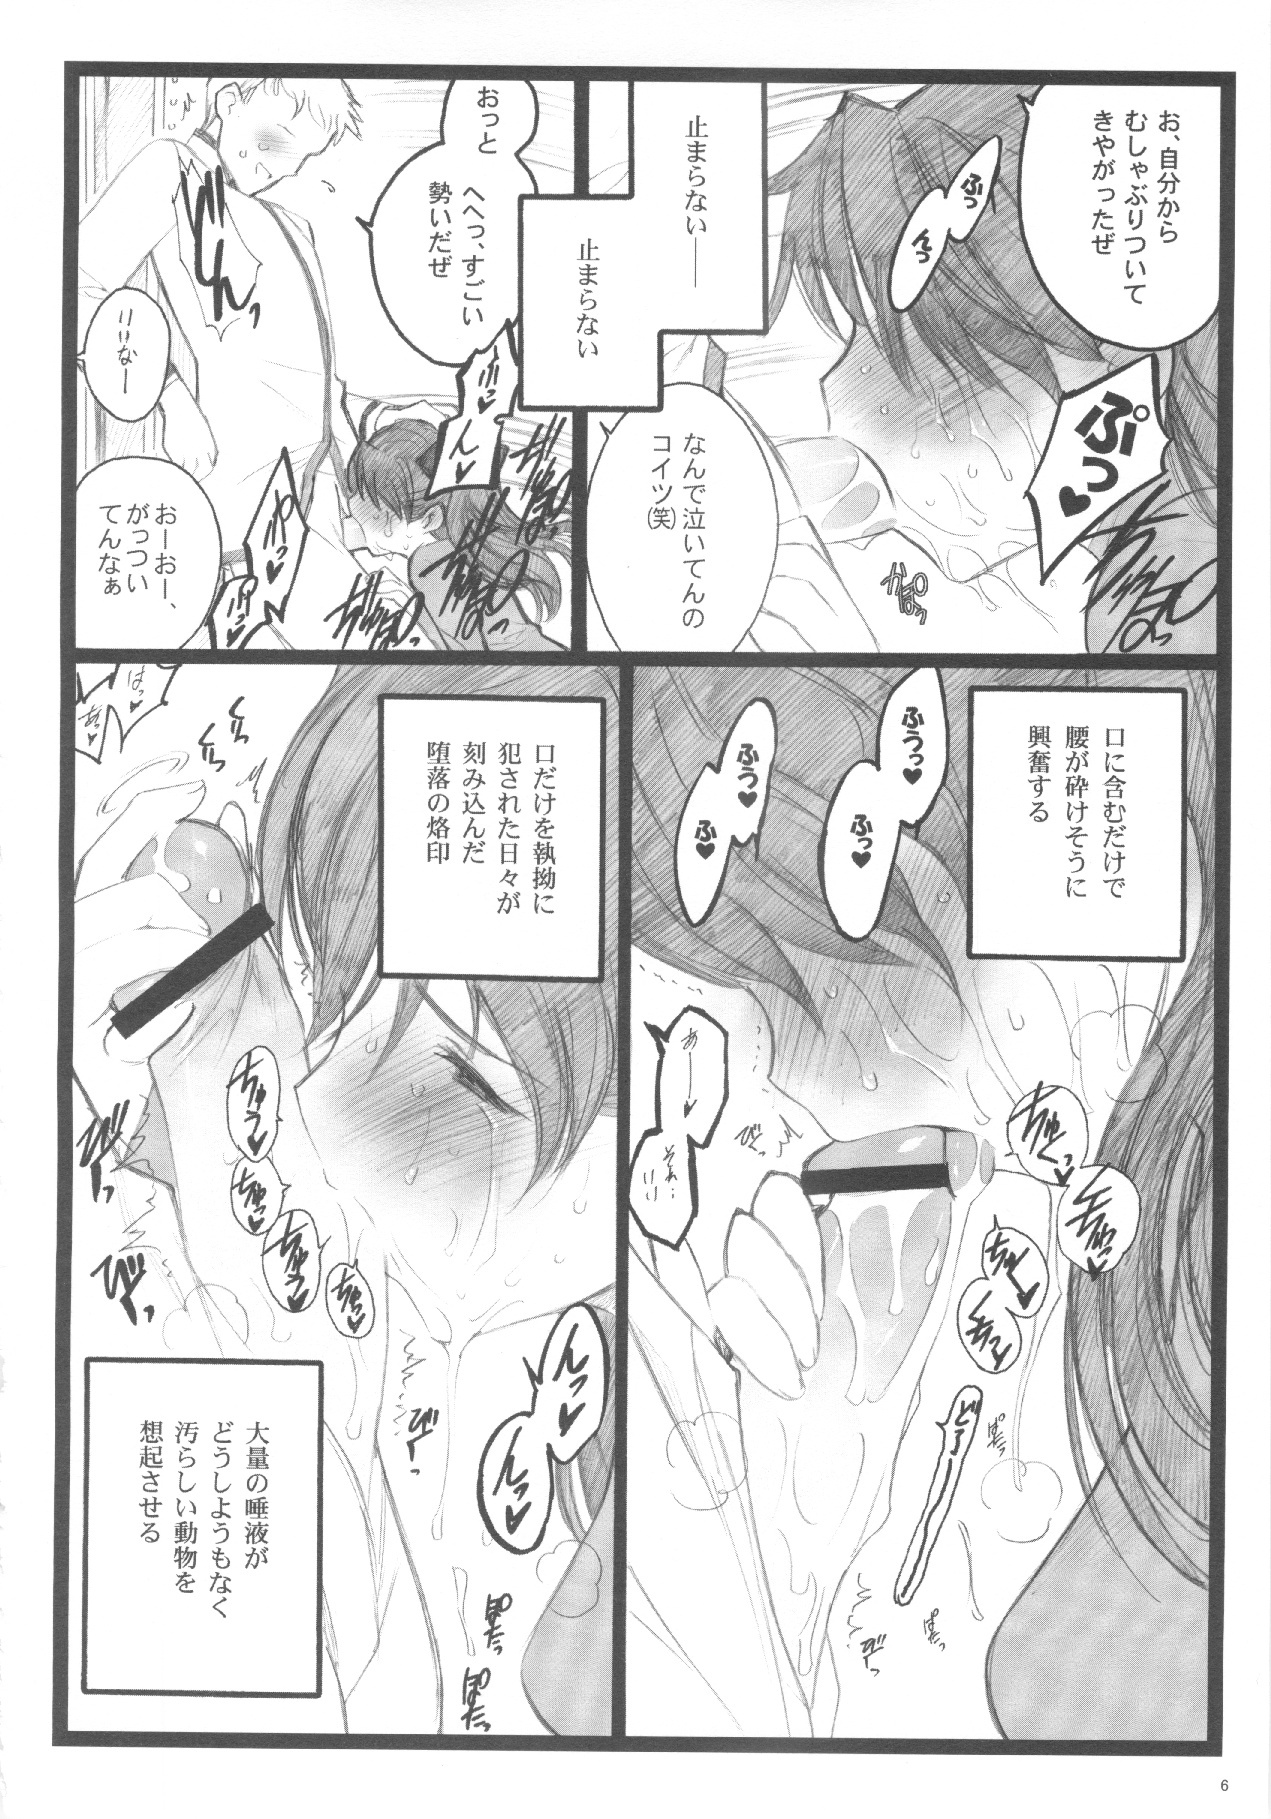 (C71) [Keumaya (Inoue Junichi)] Walpurugisnacht 3 / Walpurgis no Yoru 3 (Fate/stay night) page 5 full